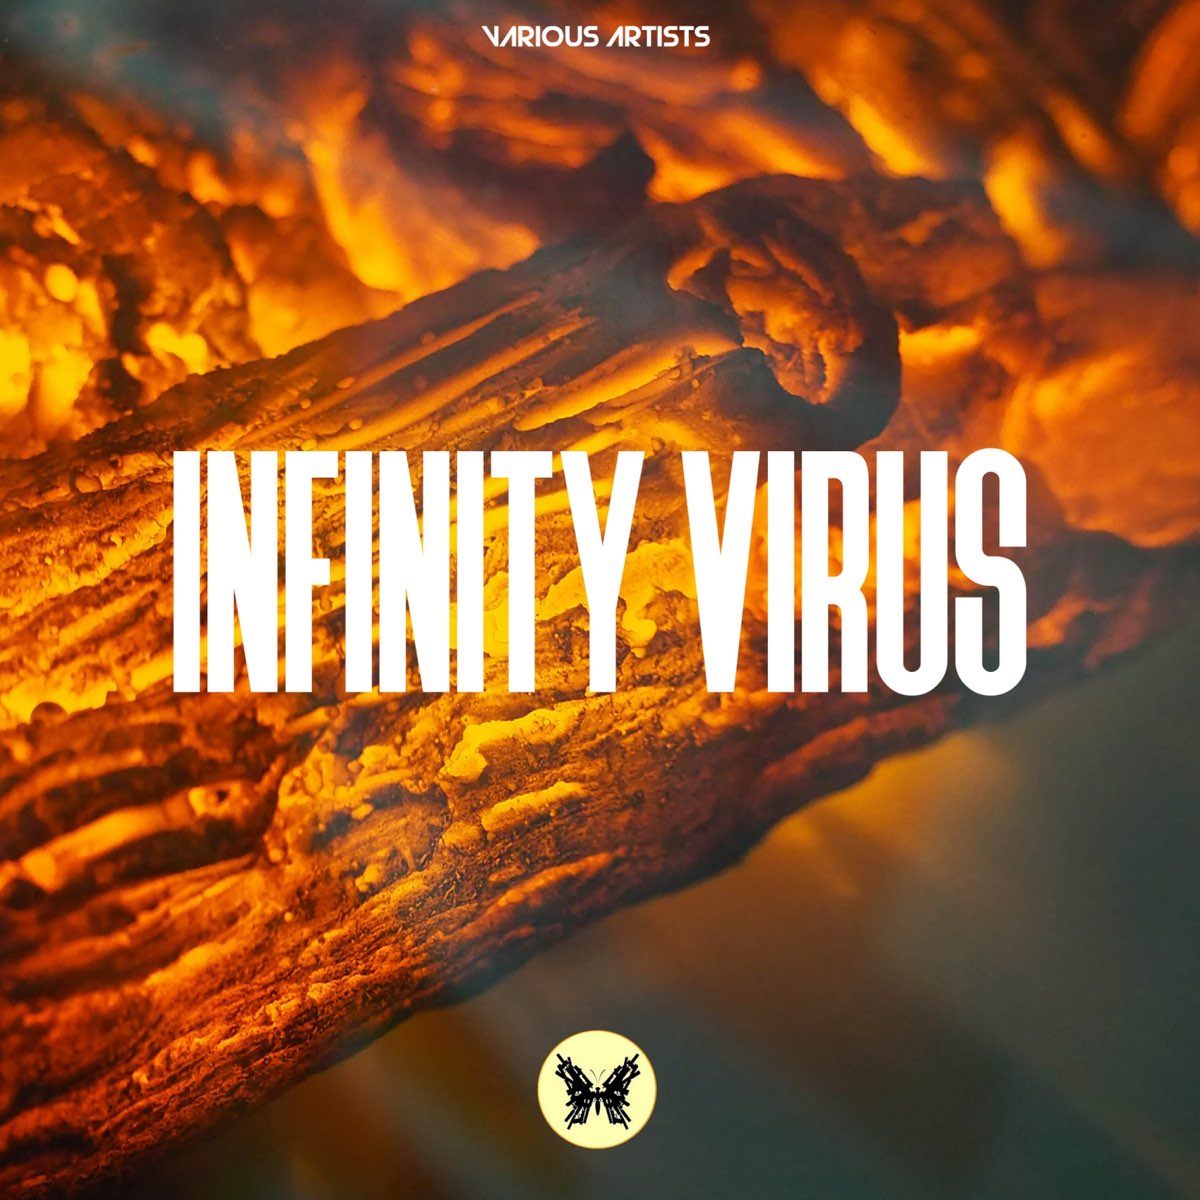 Virus Infinite